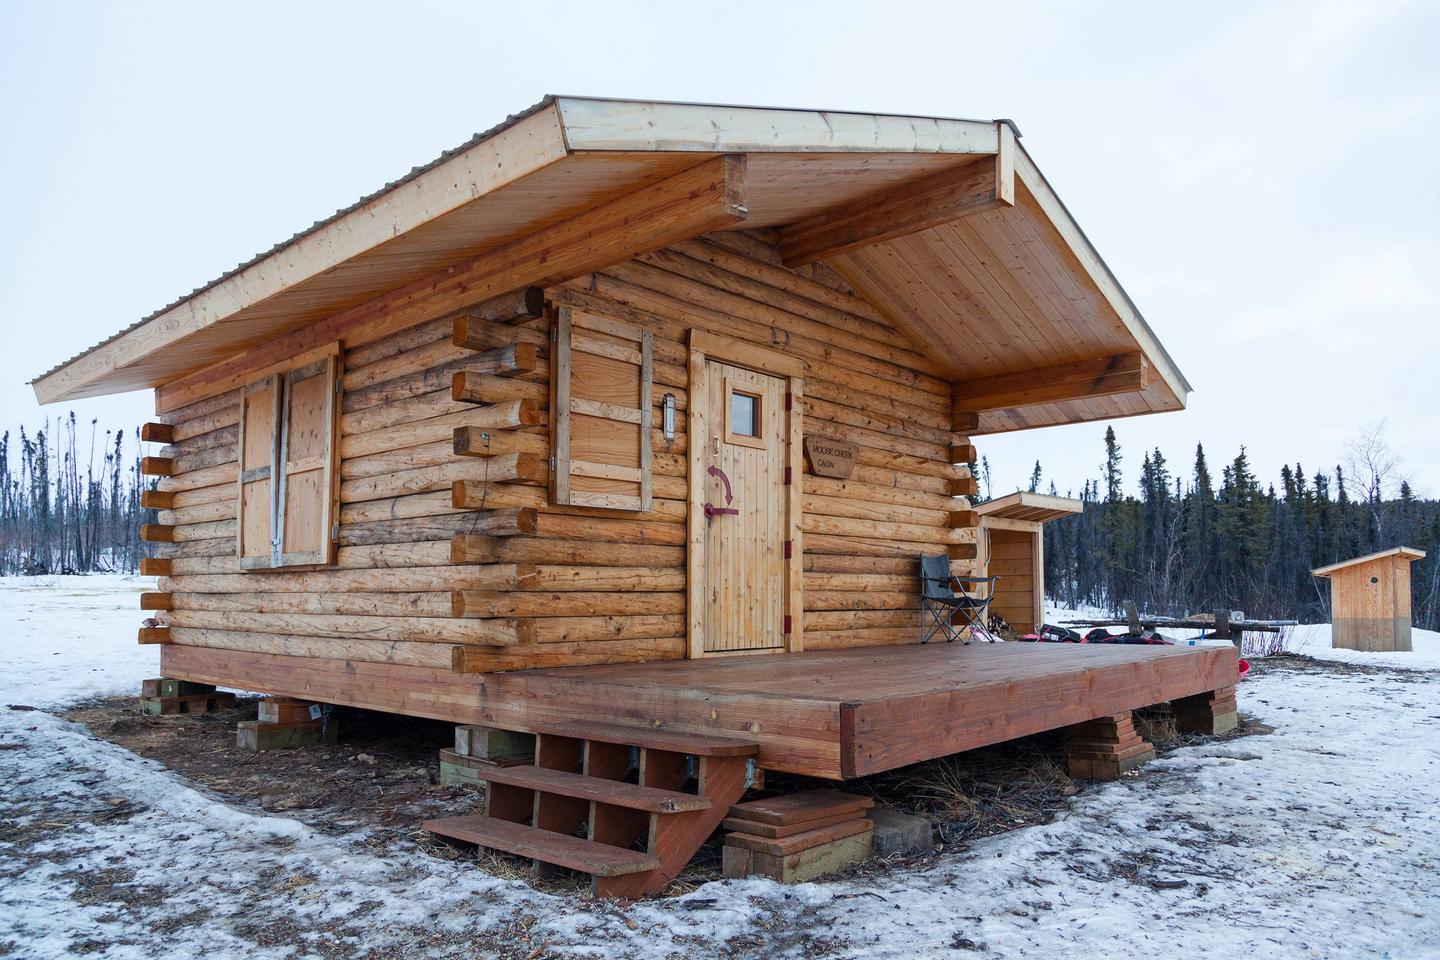 A log cabin in a snowy meadowMoose Creek Cabin in winter